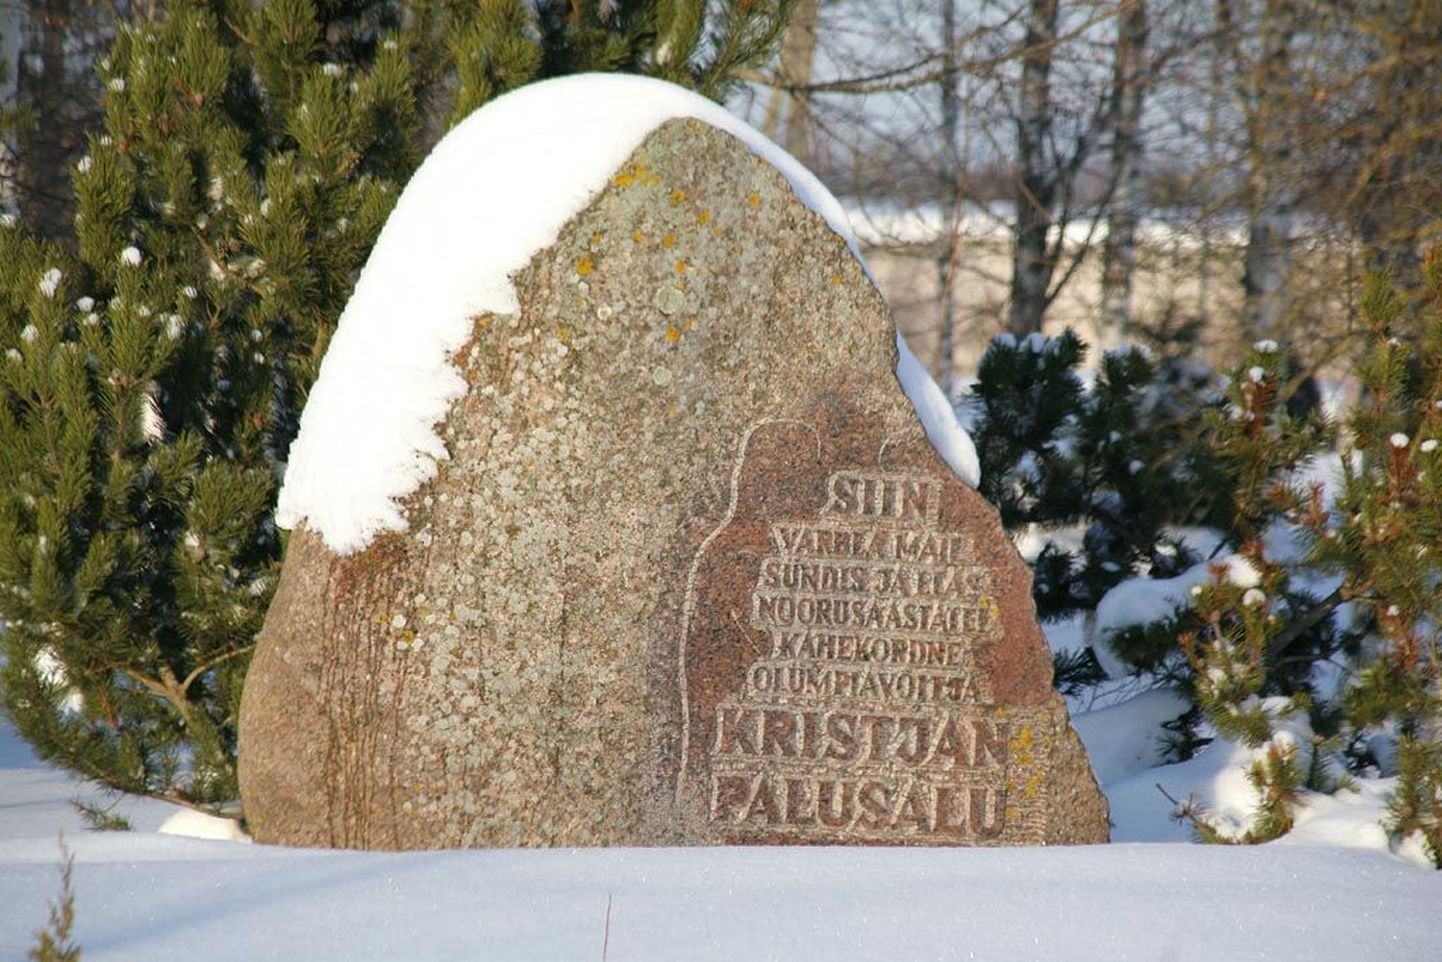 Varblas suure tee ääres vallamaja ees kõrgub maakivi Kristjan Palusalule (1908-1987).